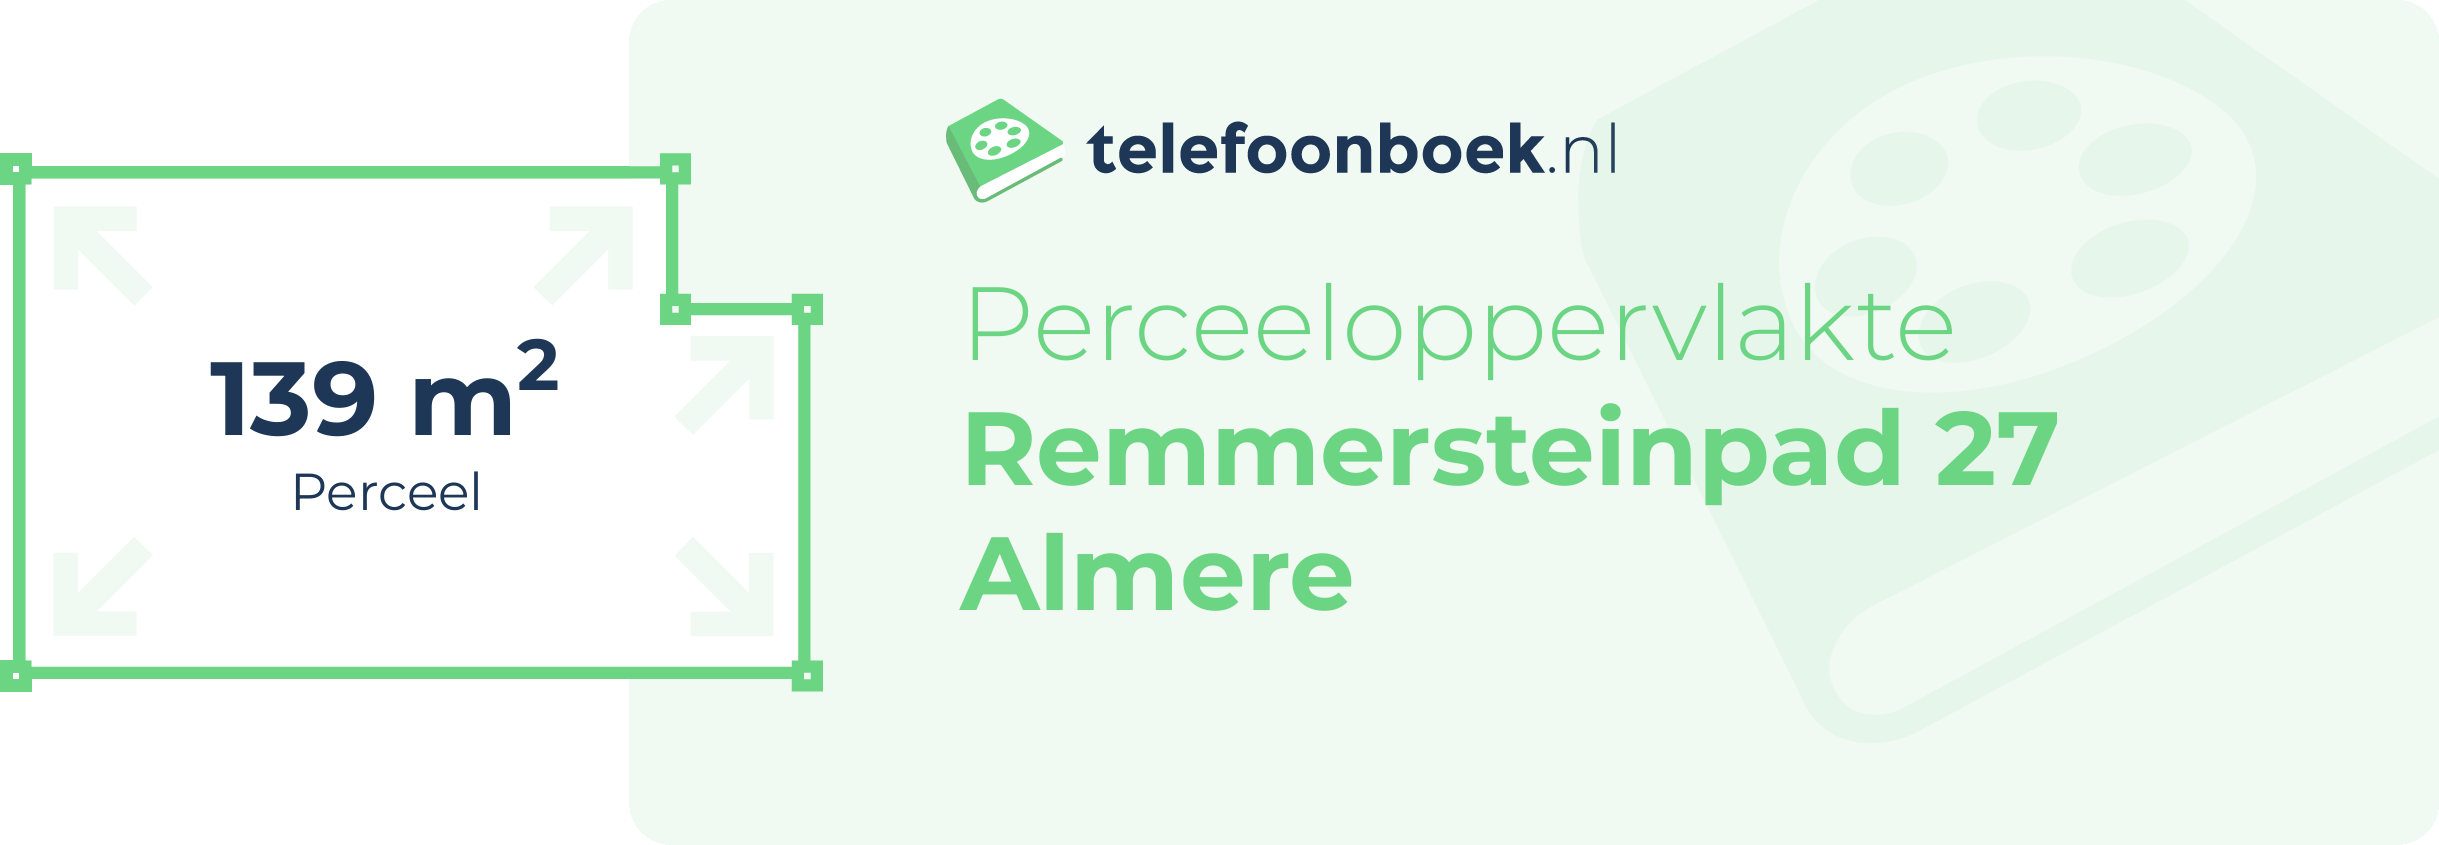 Perceeloppervlakte Remmersteinpad 27 Almere